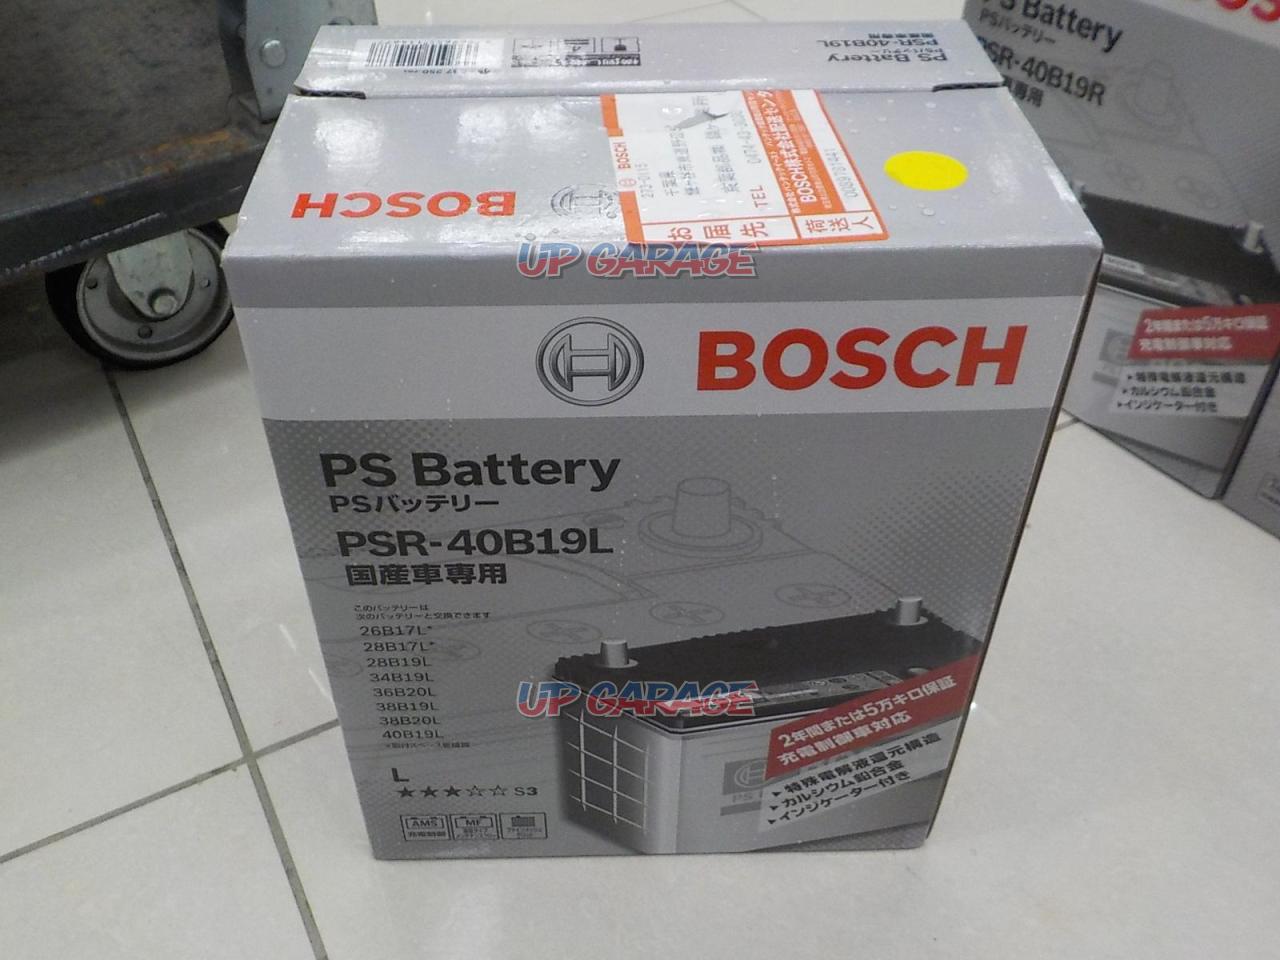 Bosch Ps Battery 40b19l Batteries Croooober